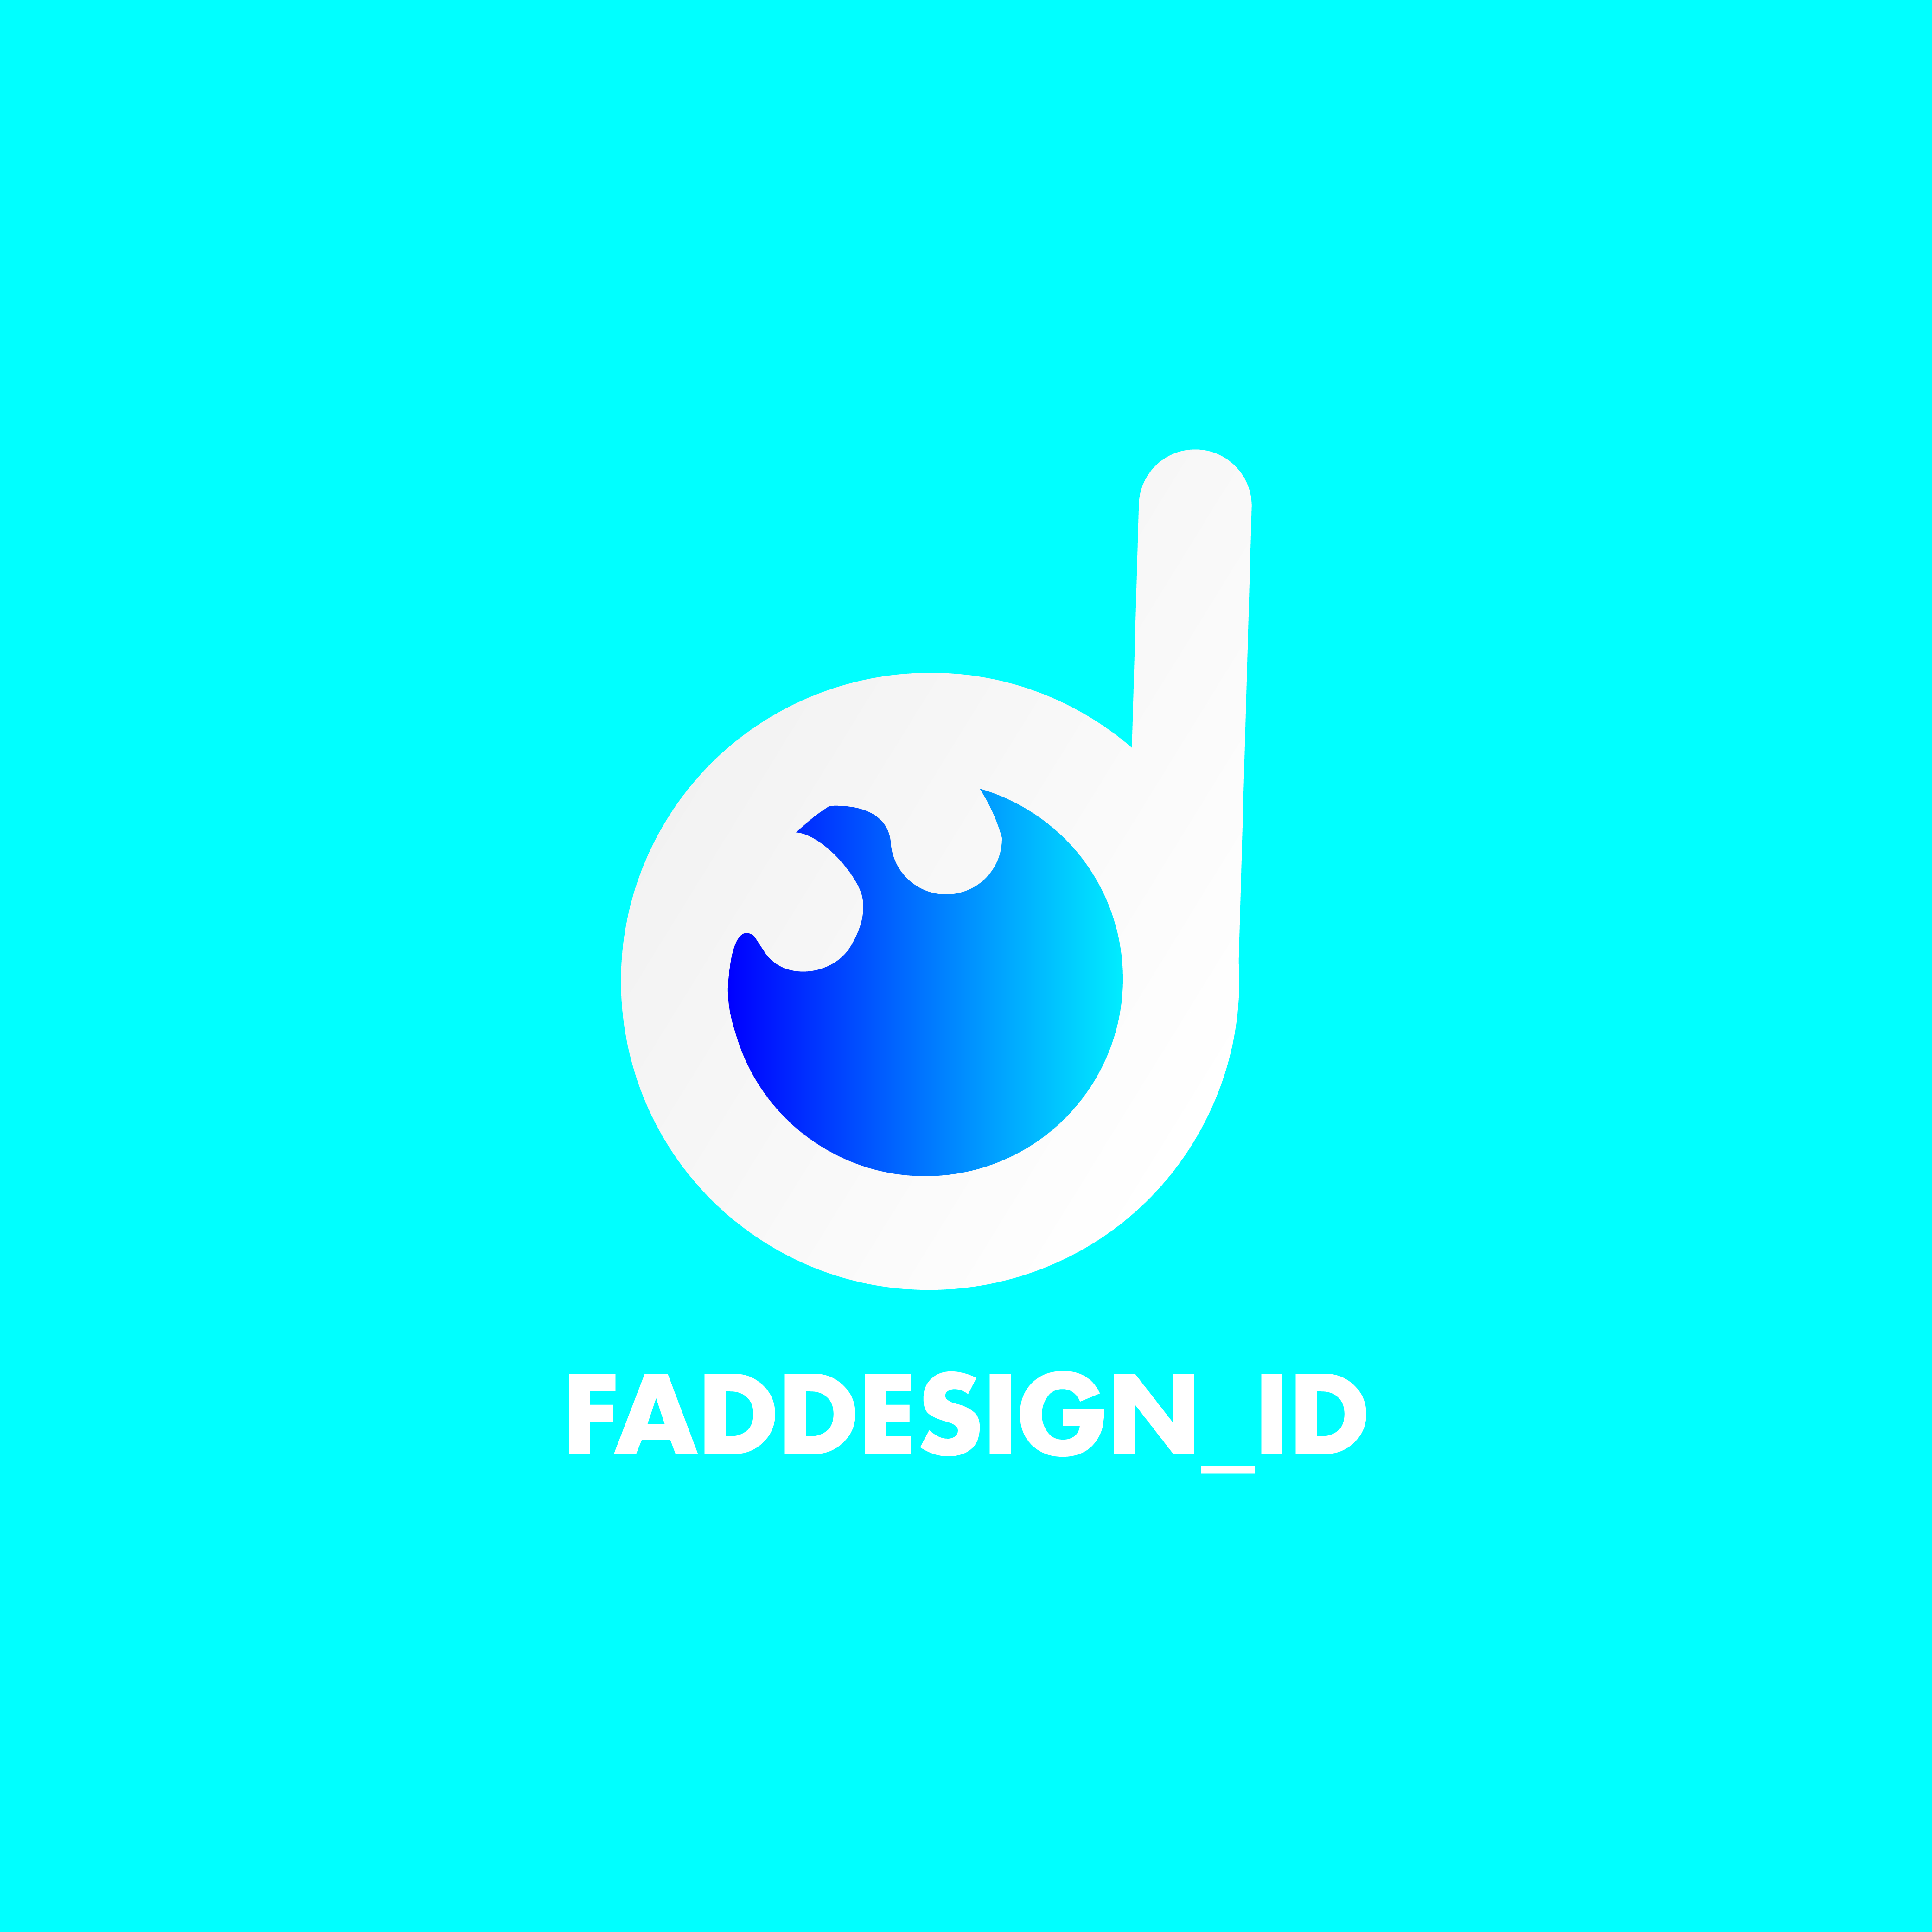 Faddesign_id's Profile Picture